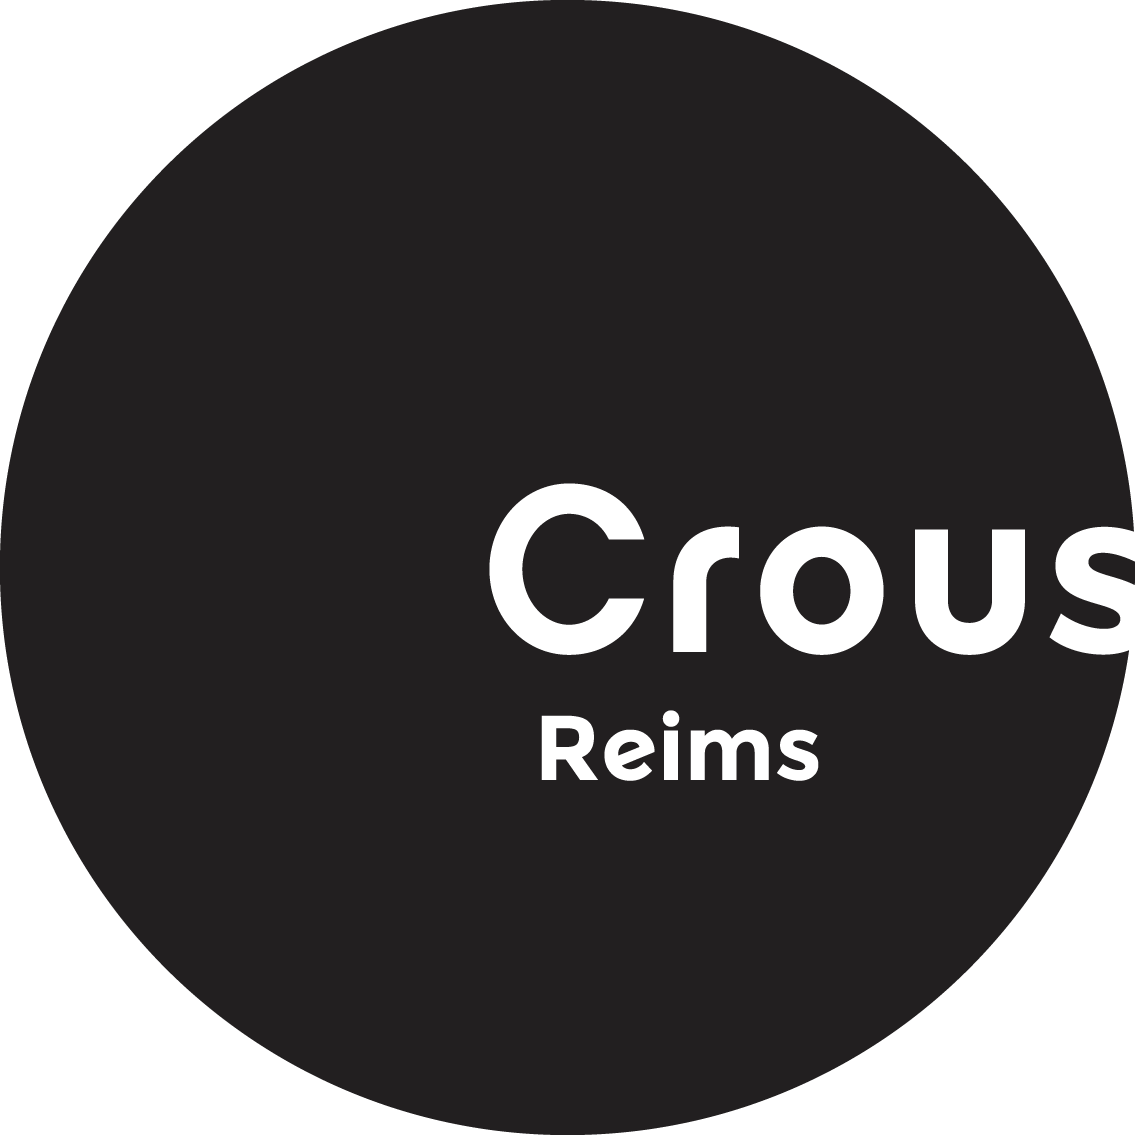 Crous de Reims